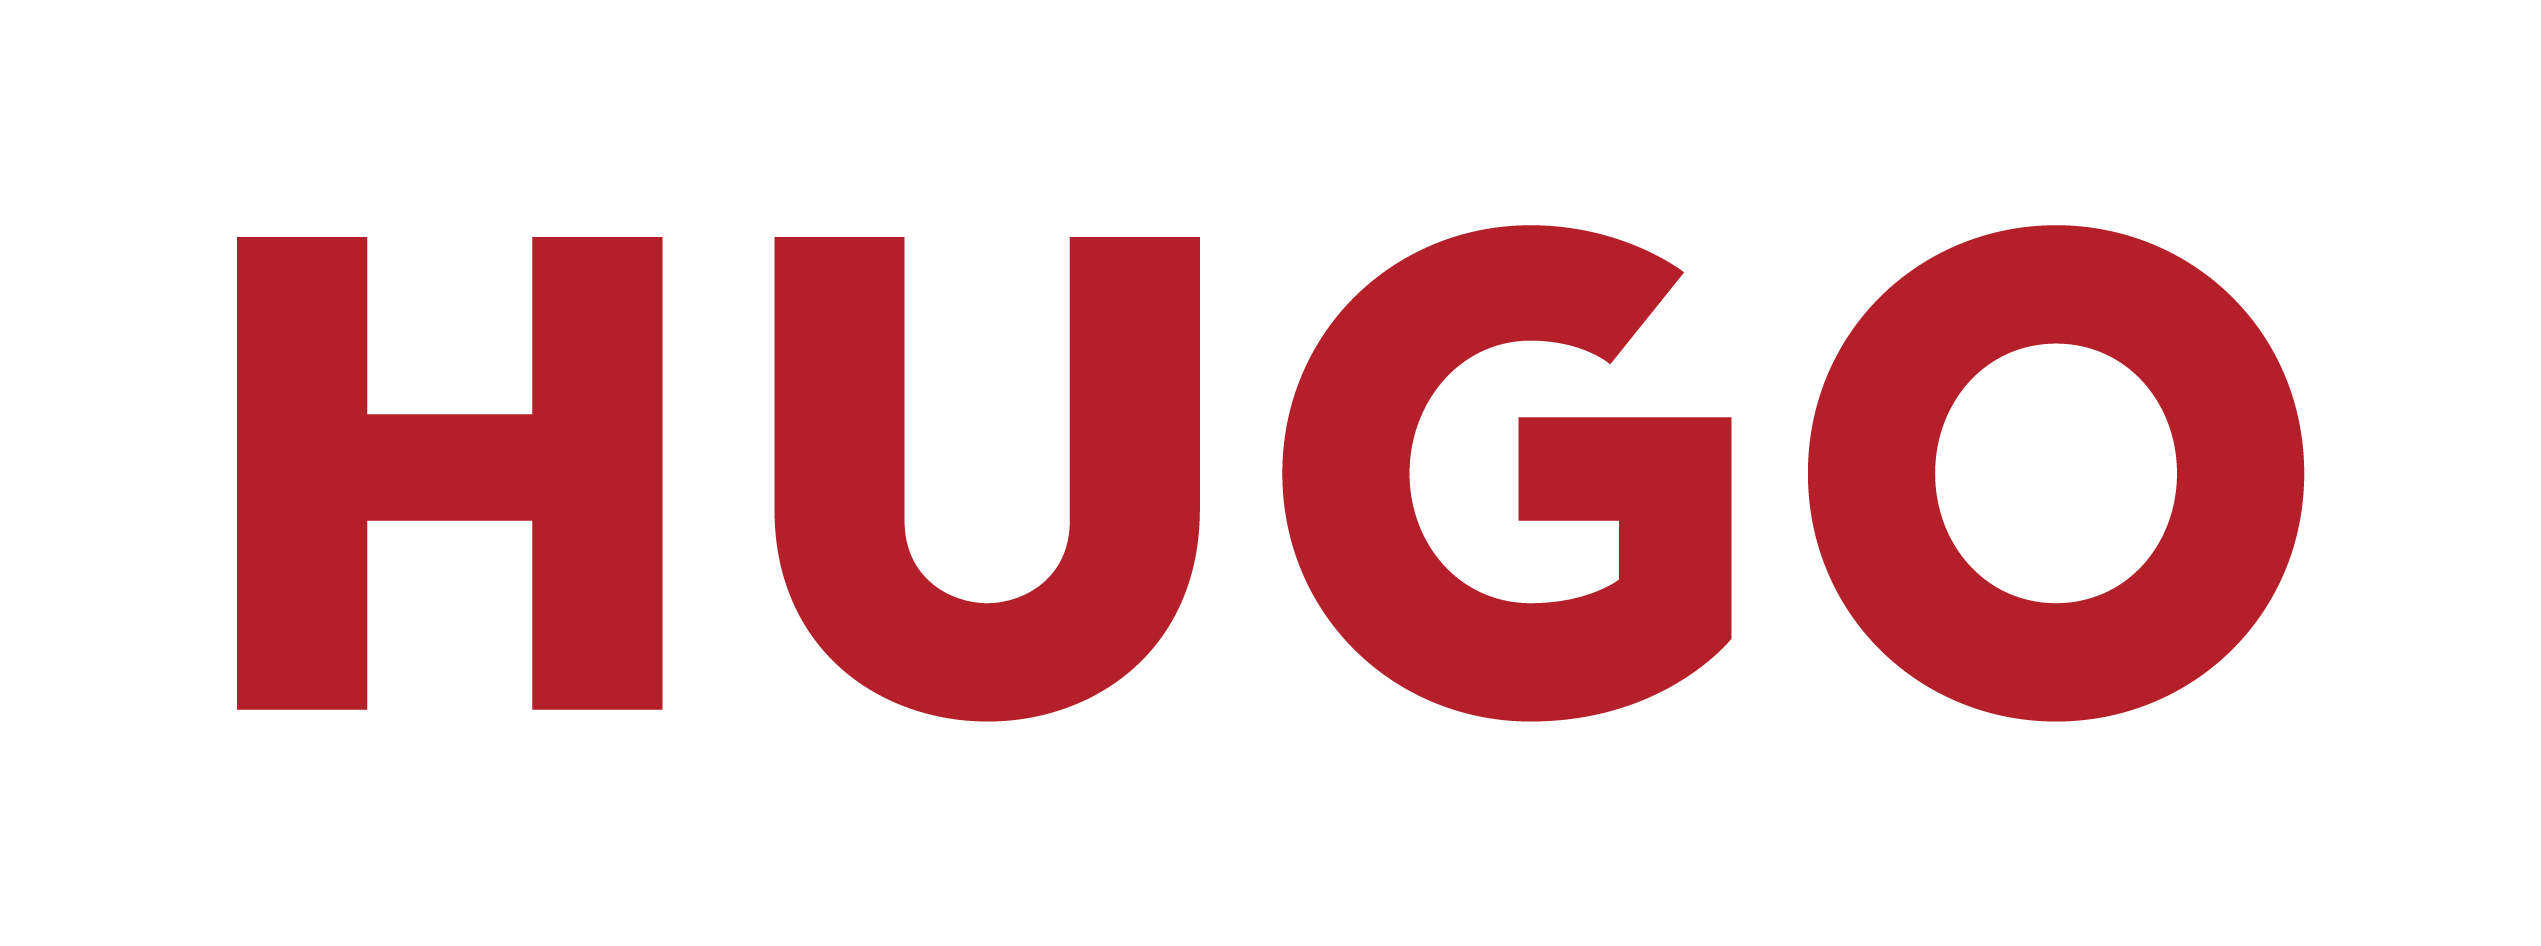 Hugo com. Hugo лейбл. Hugo надпись. Хуго лого. Логотип Hugo красный.